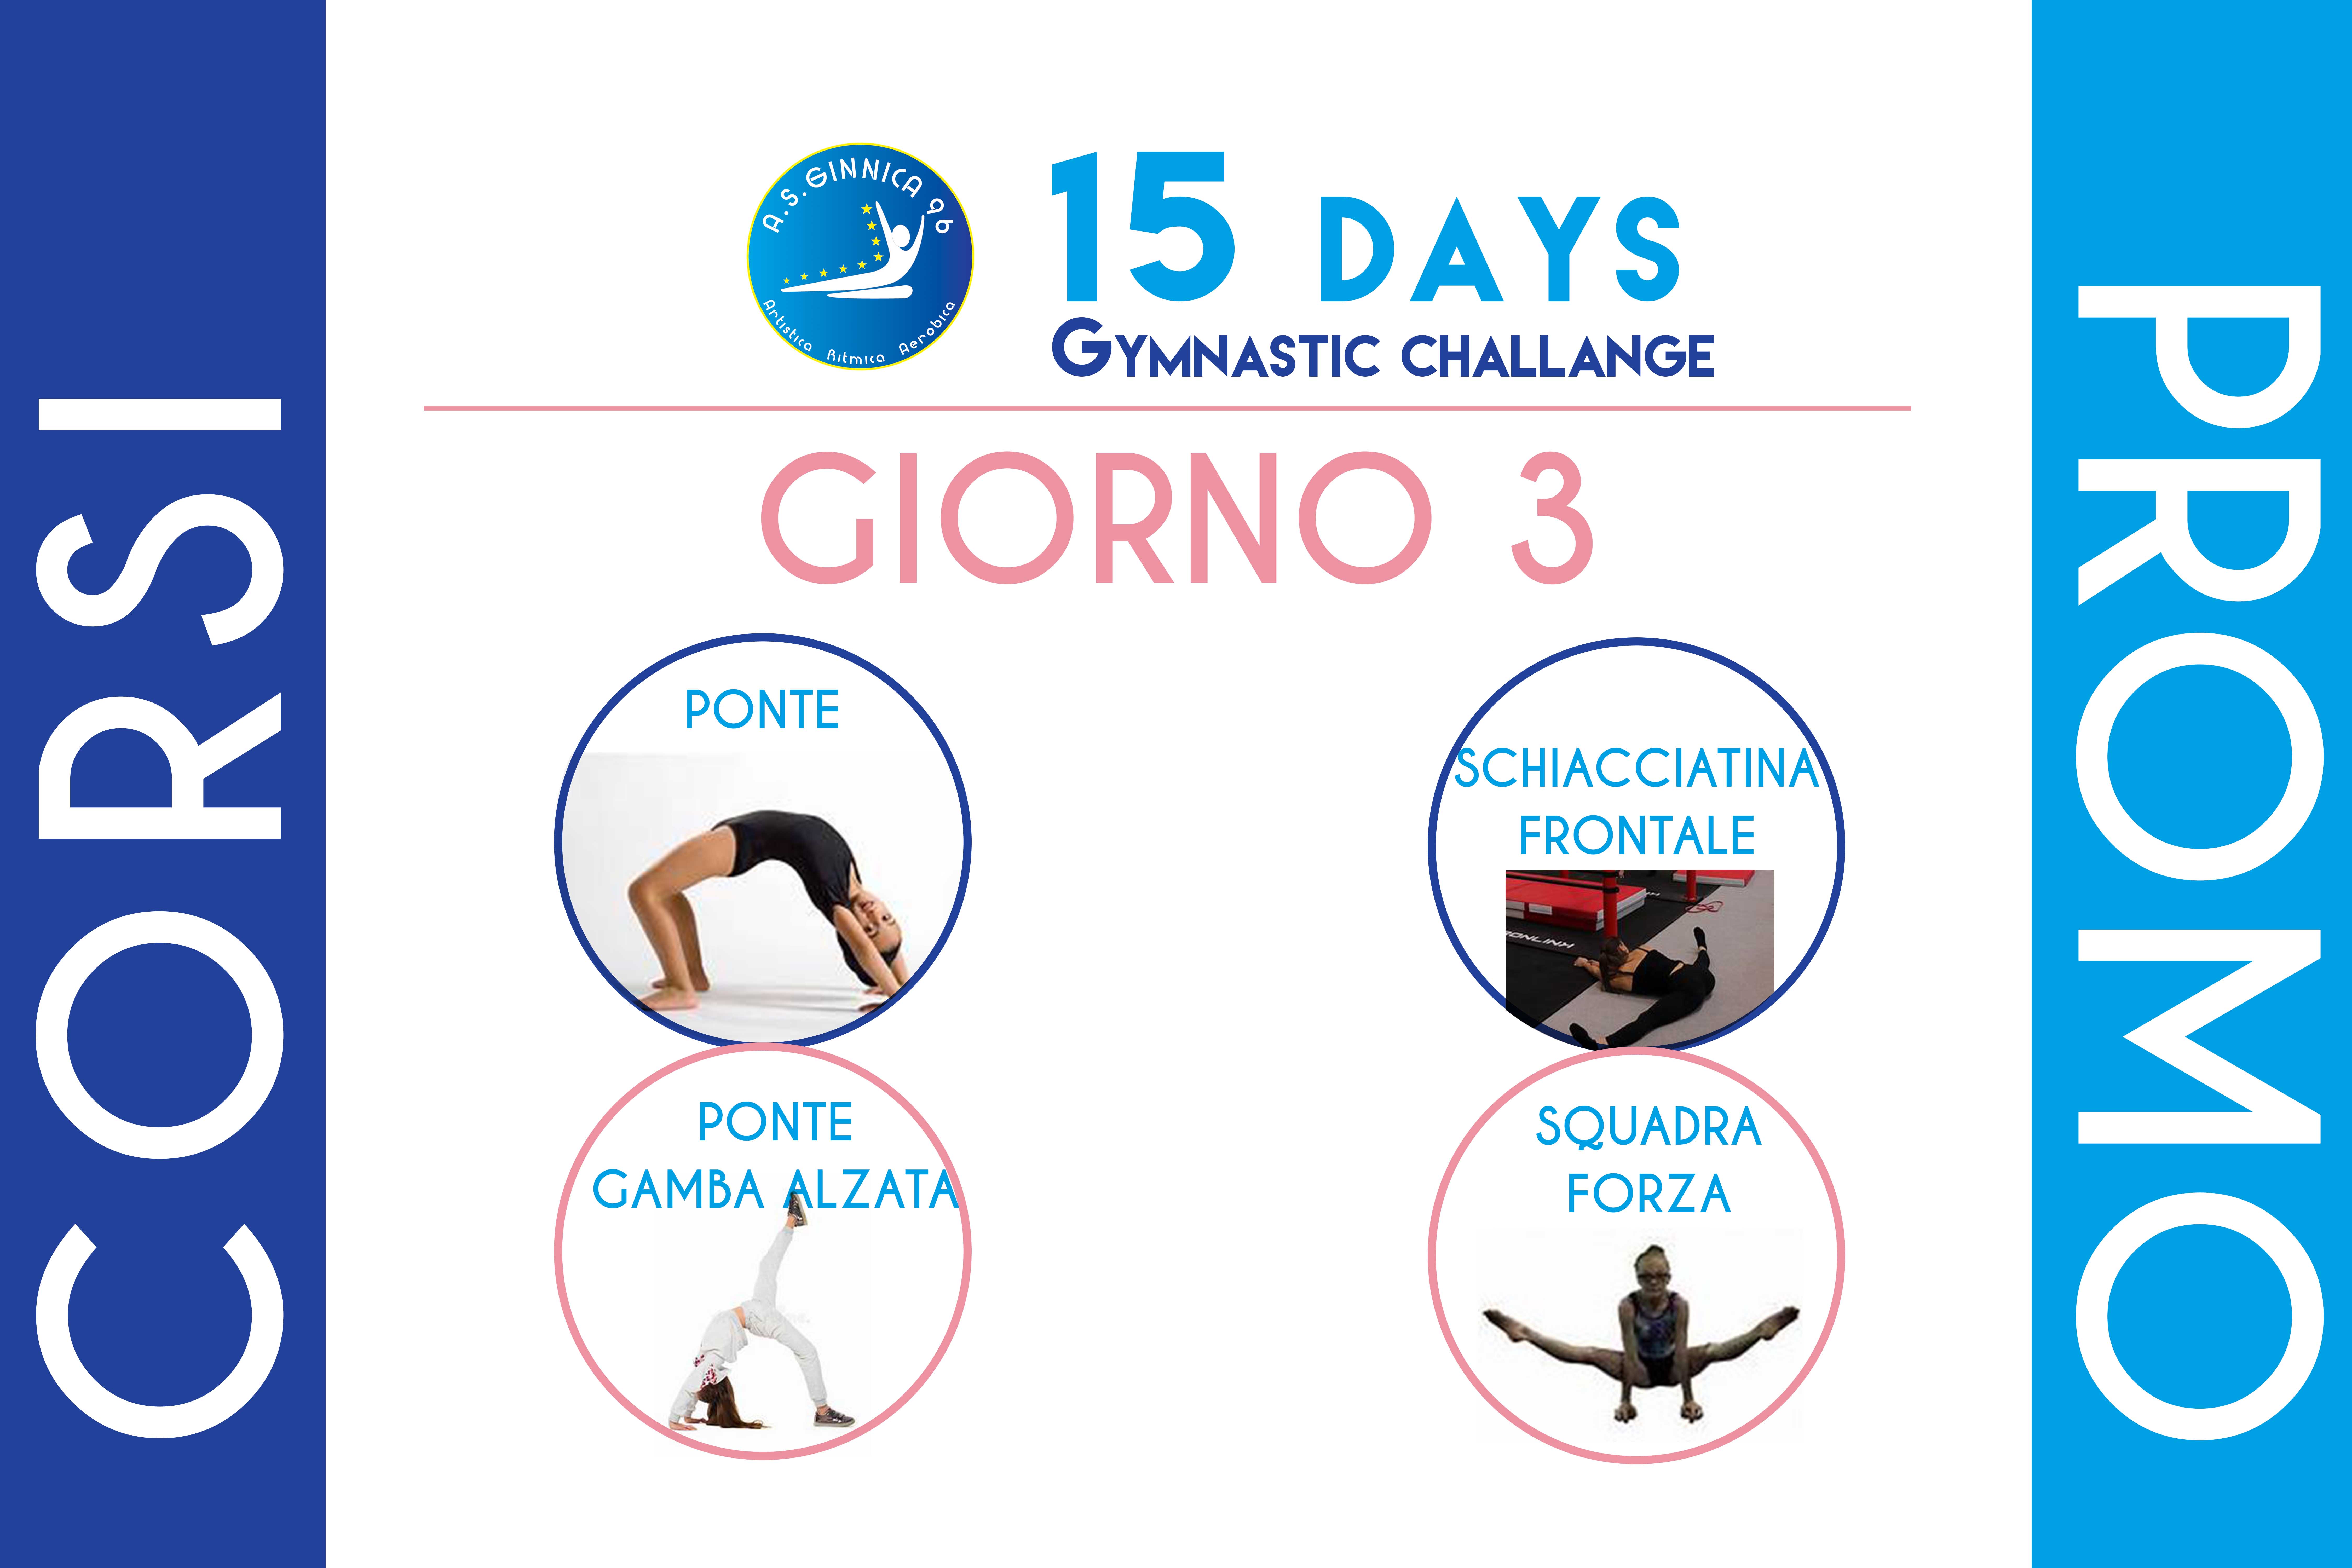 Day 3 / 15 Days Gymnastics Challenge